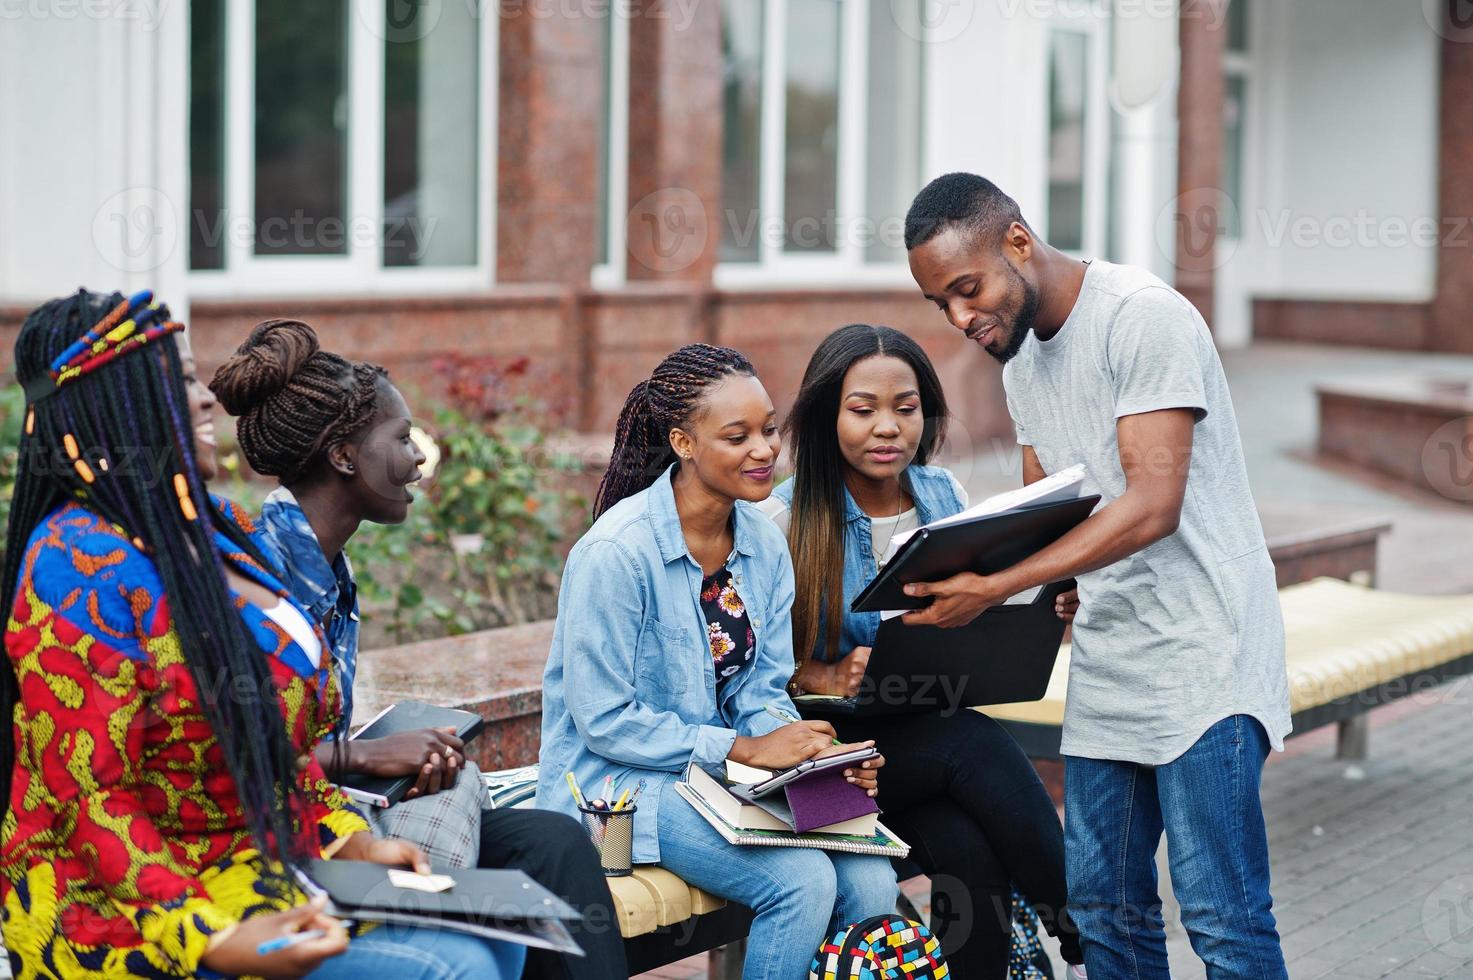 groupe de cinq étudiants africains qui passent du temps ensemble sur le campus de la cour universitaire. amis afro noirs étudiant au banc avec des articles scolaires, des cahiers d'ordinateurs portables. photo